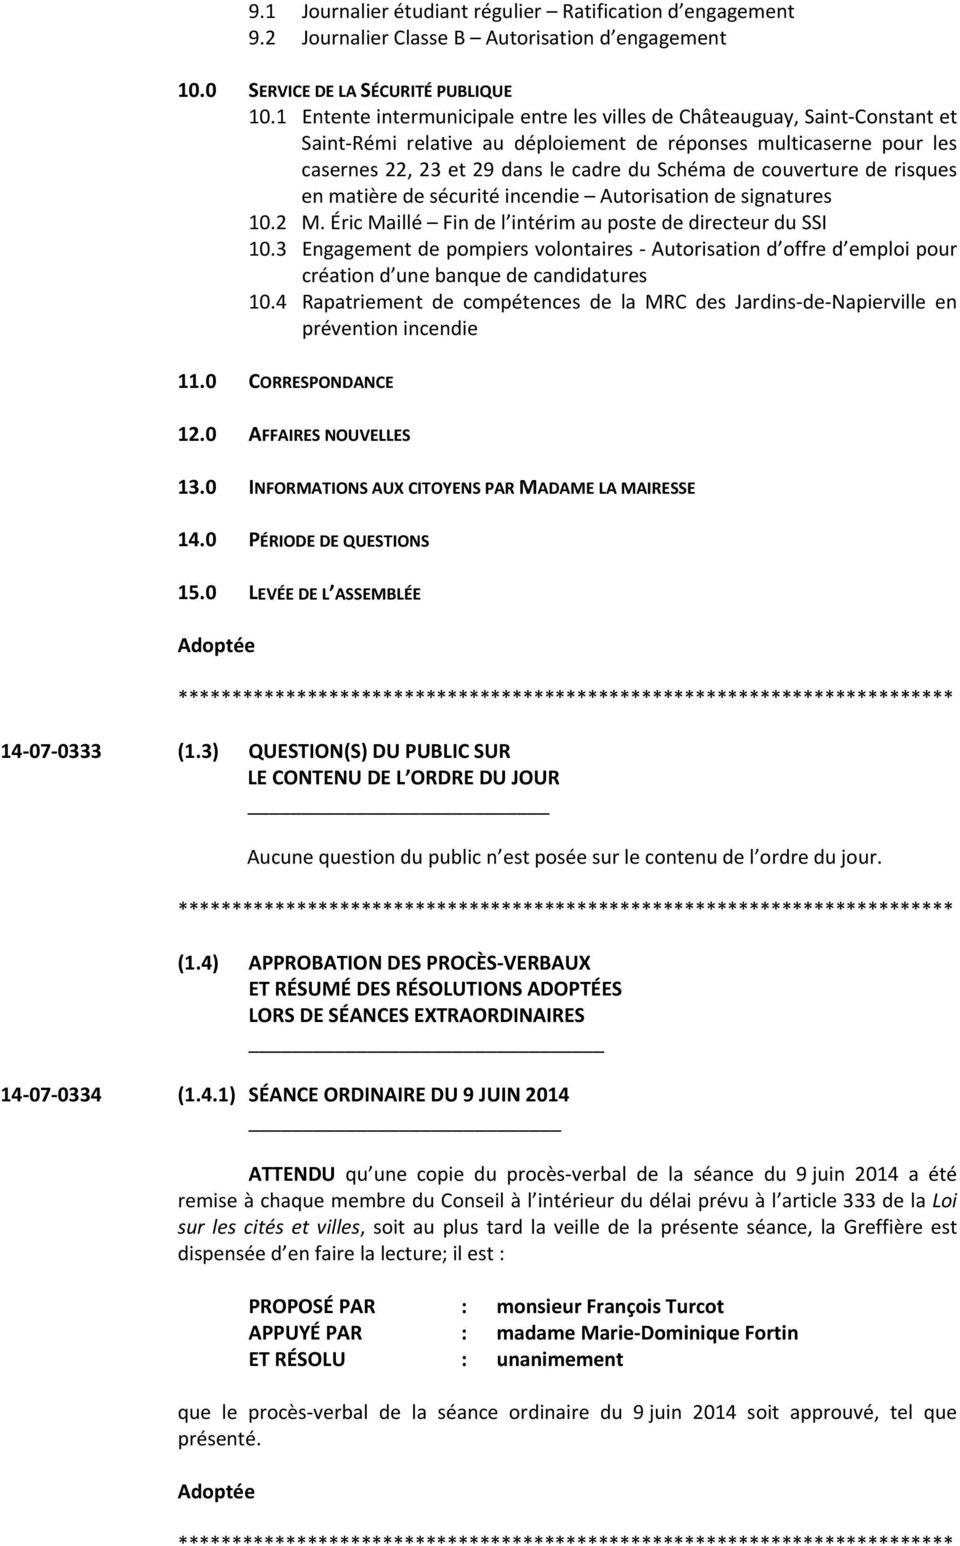 couverture de risques en matière de sécurité incendie Autorisation de signatures 10.2 M. Éric Maillé Fin de l intérim au poste de directeur du SSI 10.